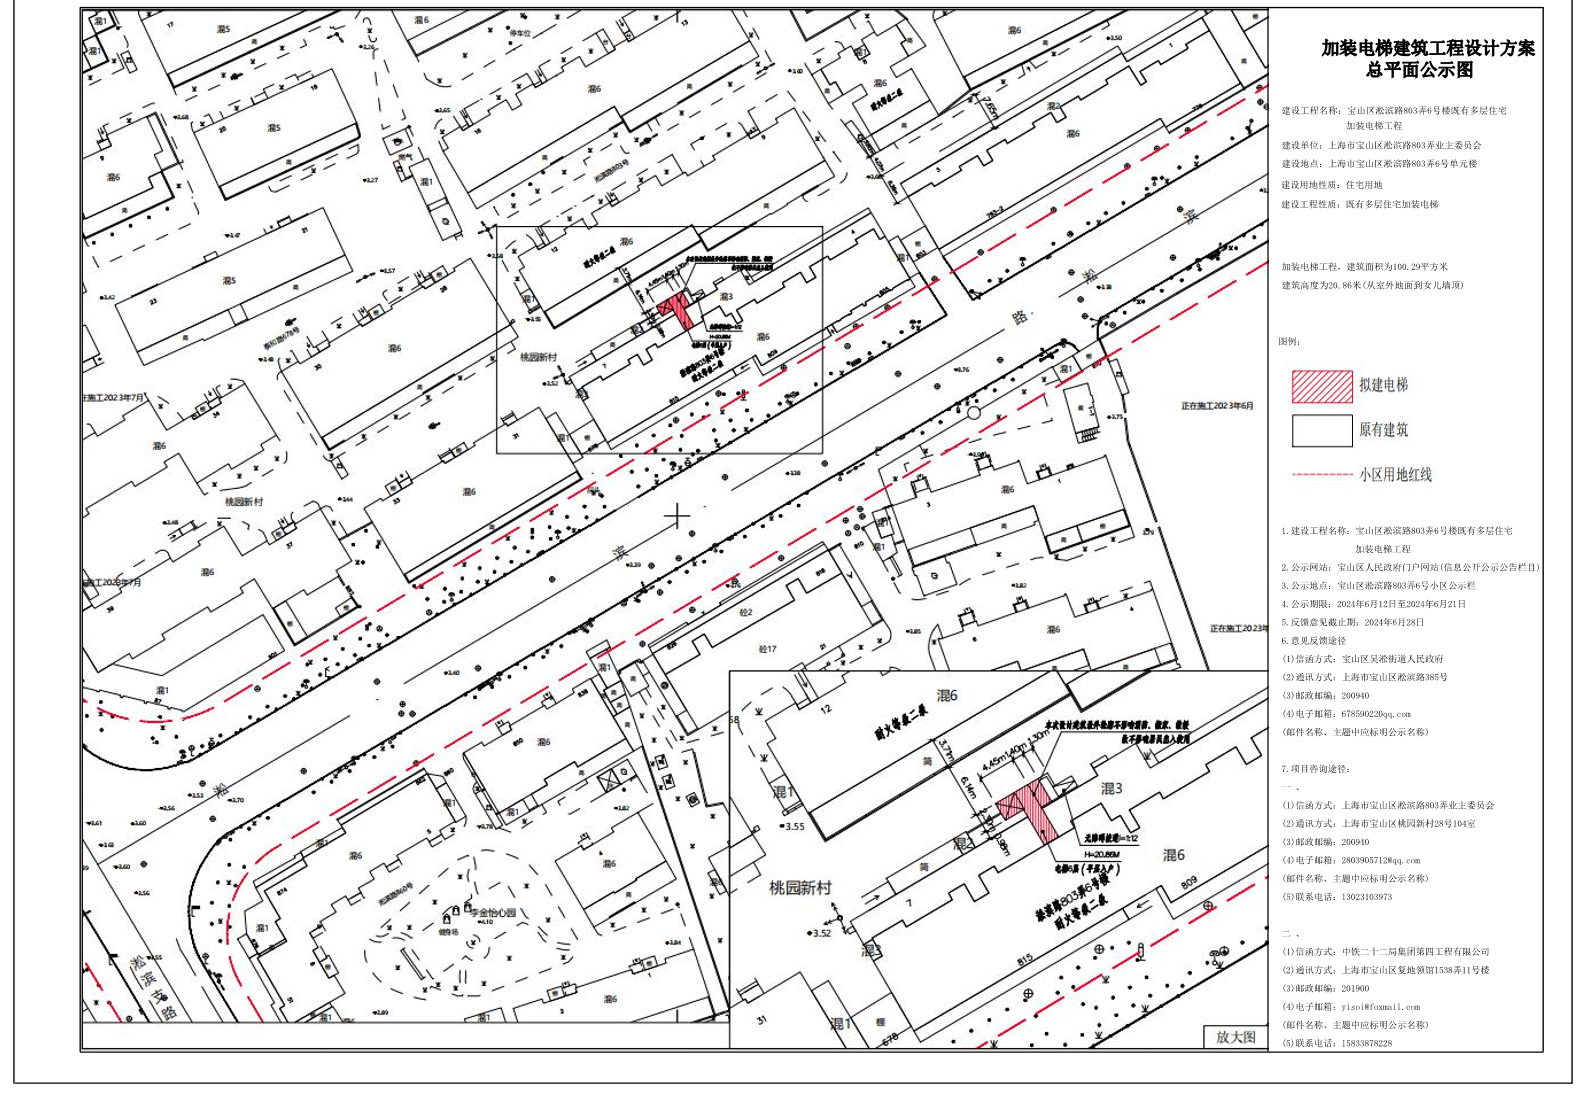 宝山区淞滨路803弄6号楼加装电梯项目公示图.pdf